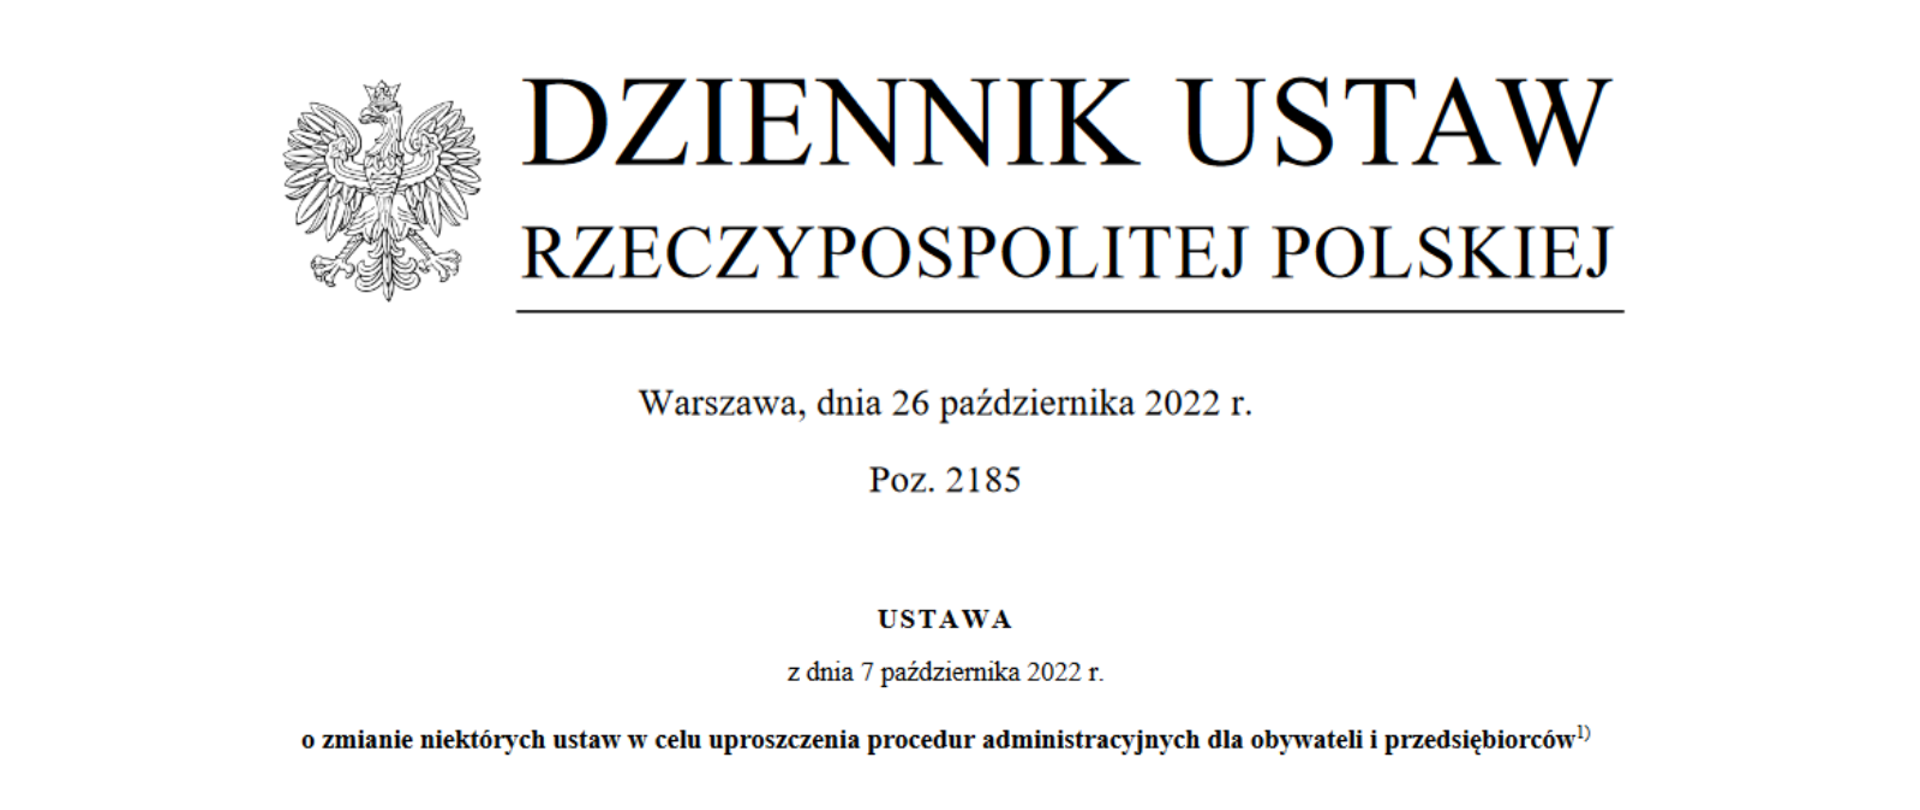 ustawa z dnia 7 października 2022 r. o zmianie niektórych ustaw w celu uproszczenia procedur administracyjnych dla obywateli i przedsiębiorców